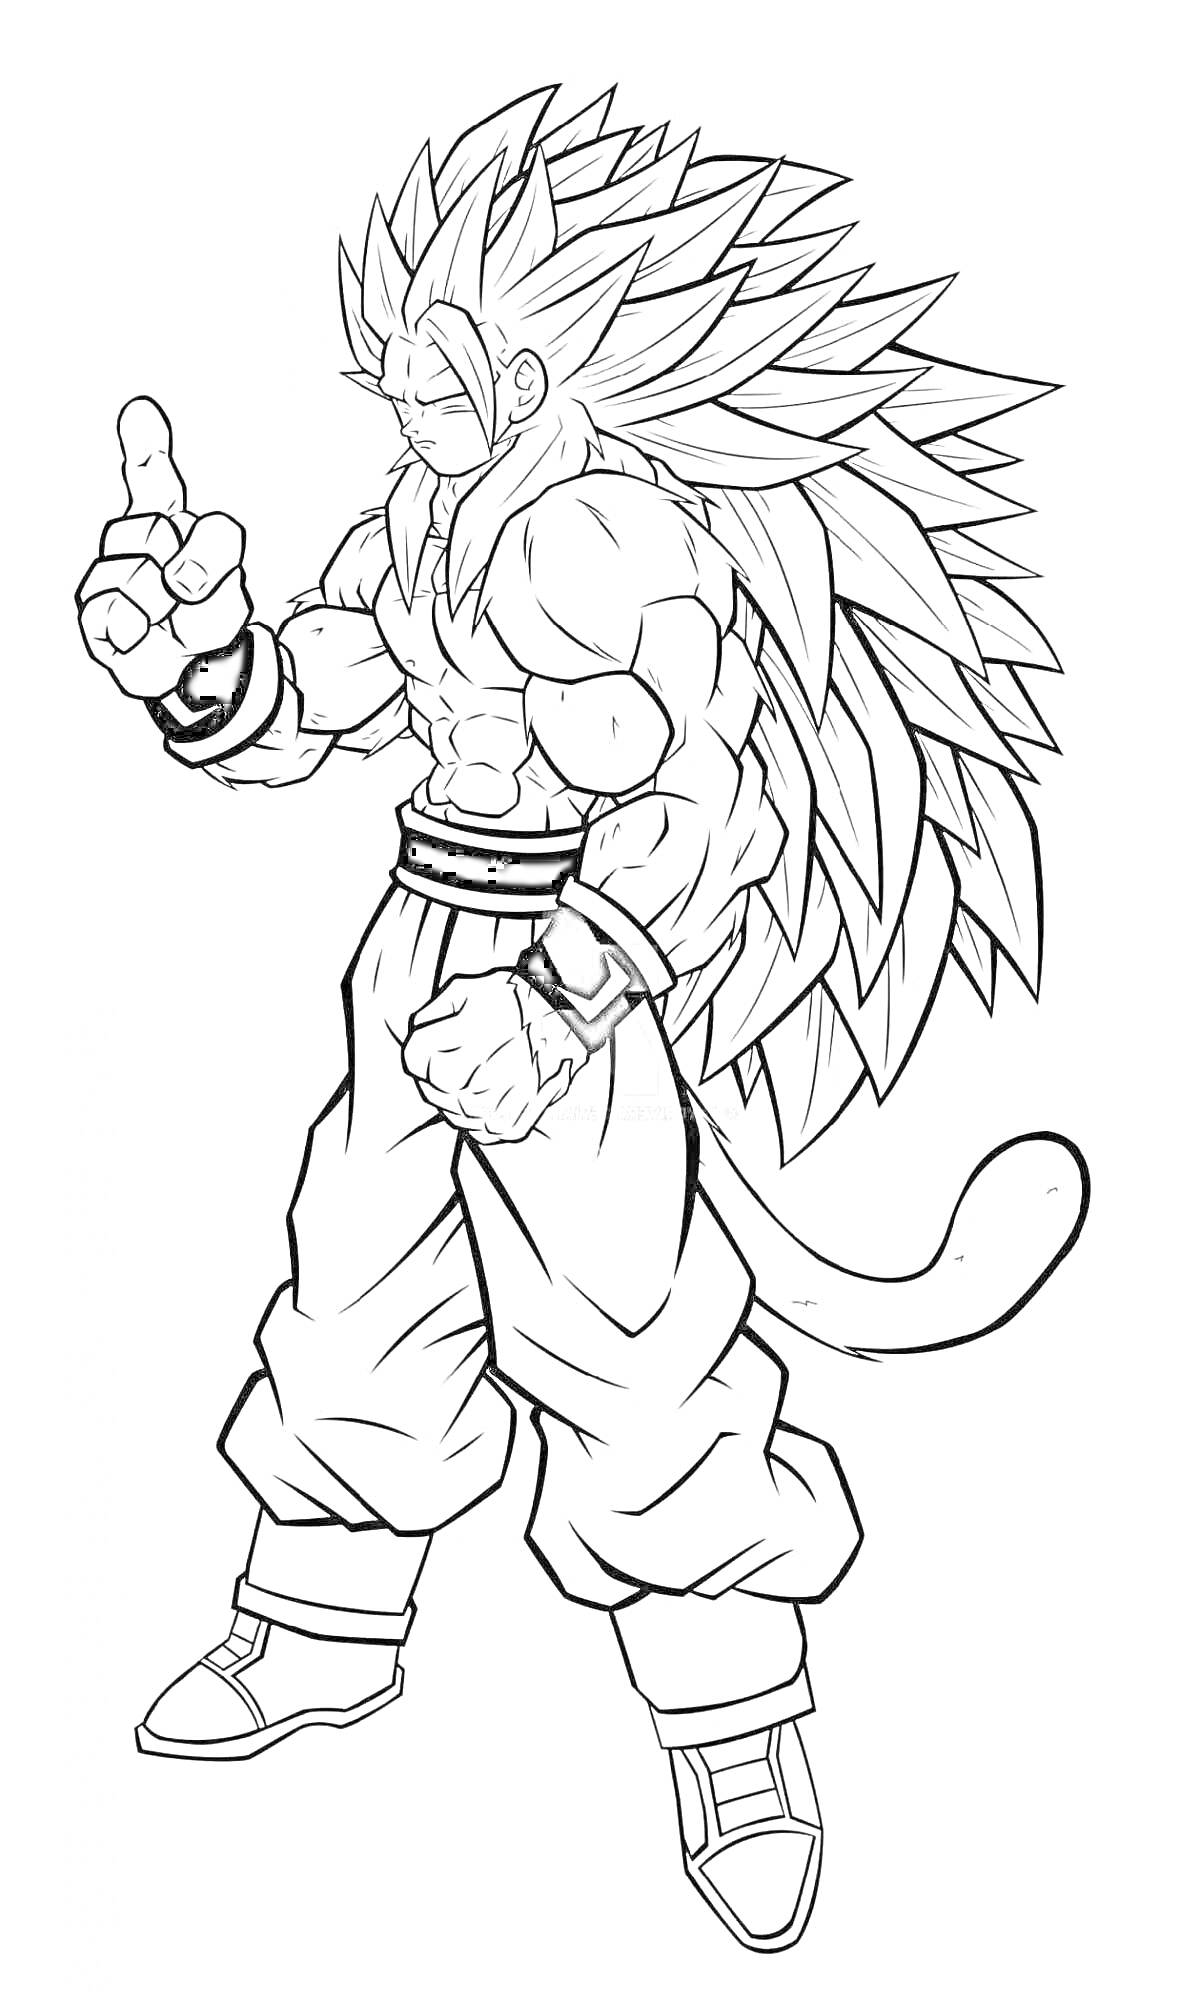 Раскраска Гоку в трансформации с длинными волосами и хвостом, стоящий в боевой стойке и поднимающий палец вверх.